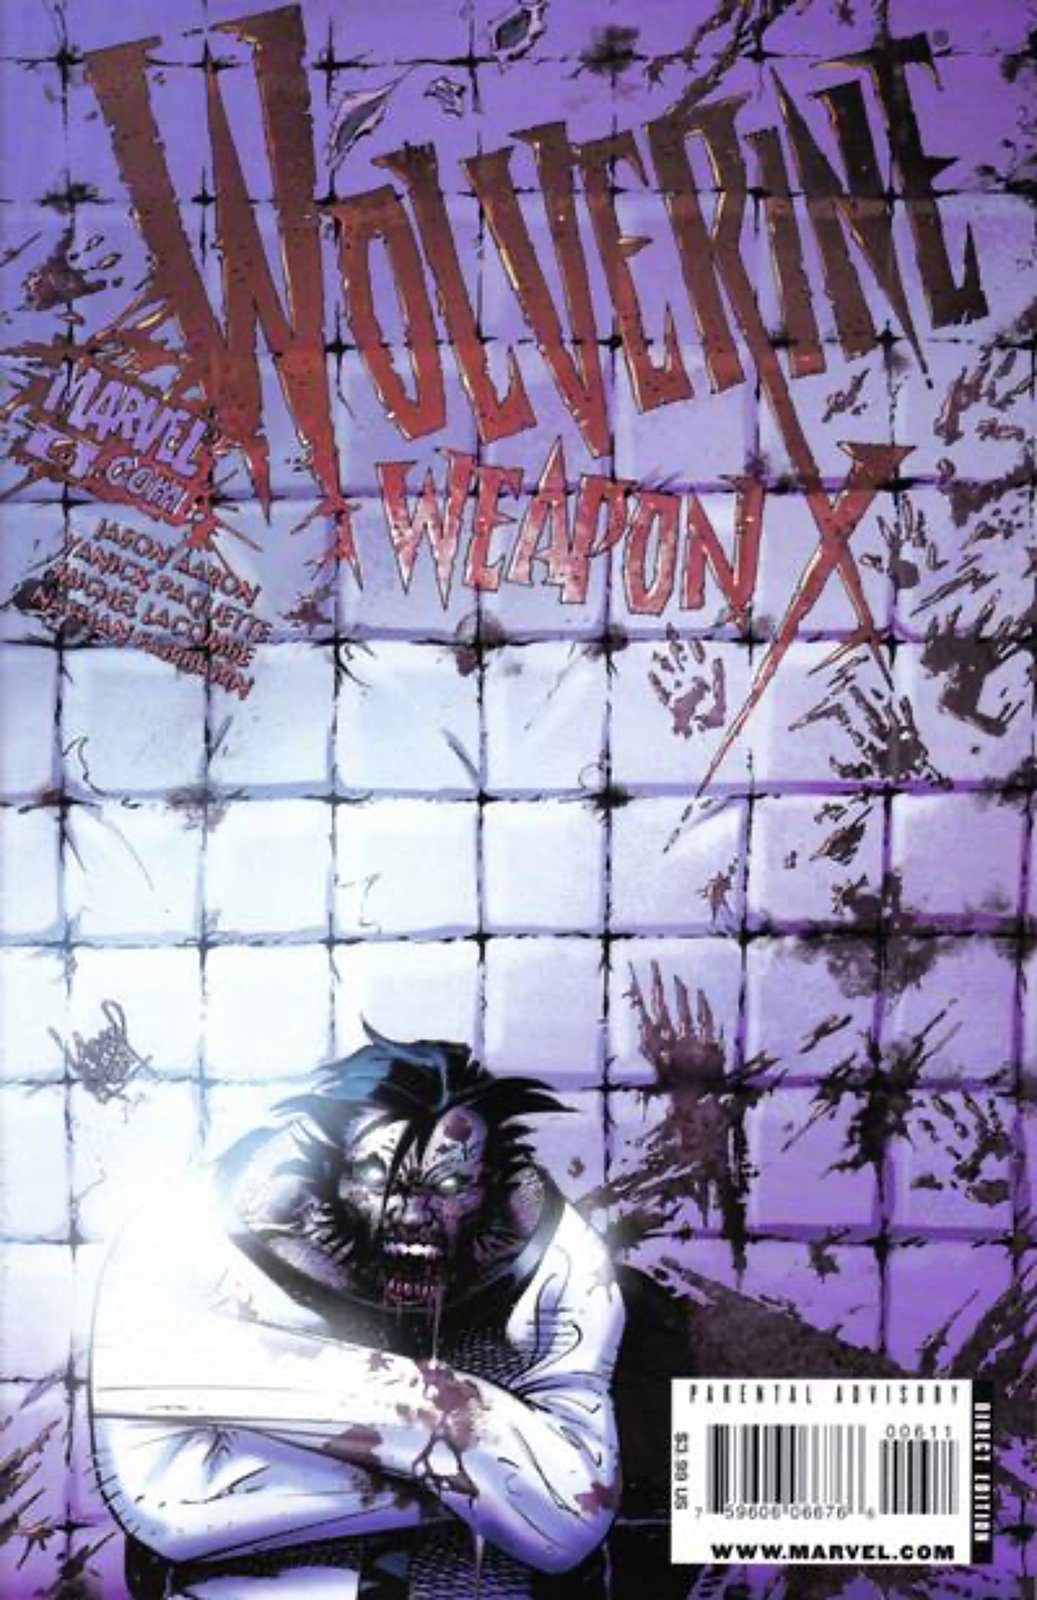 Wolverine Weapon X #6 Adam Kubert Cover (2009-2010) Marvel Comics